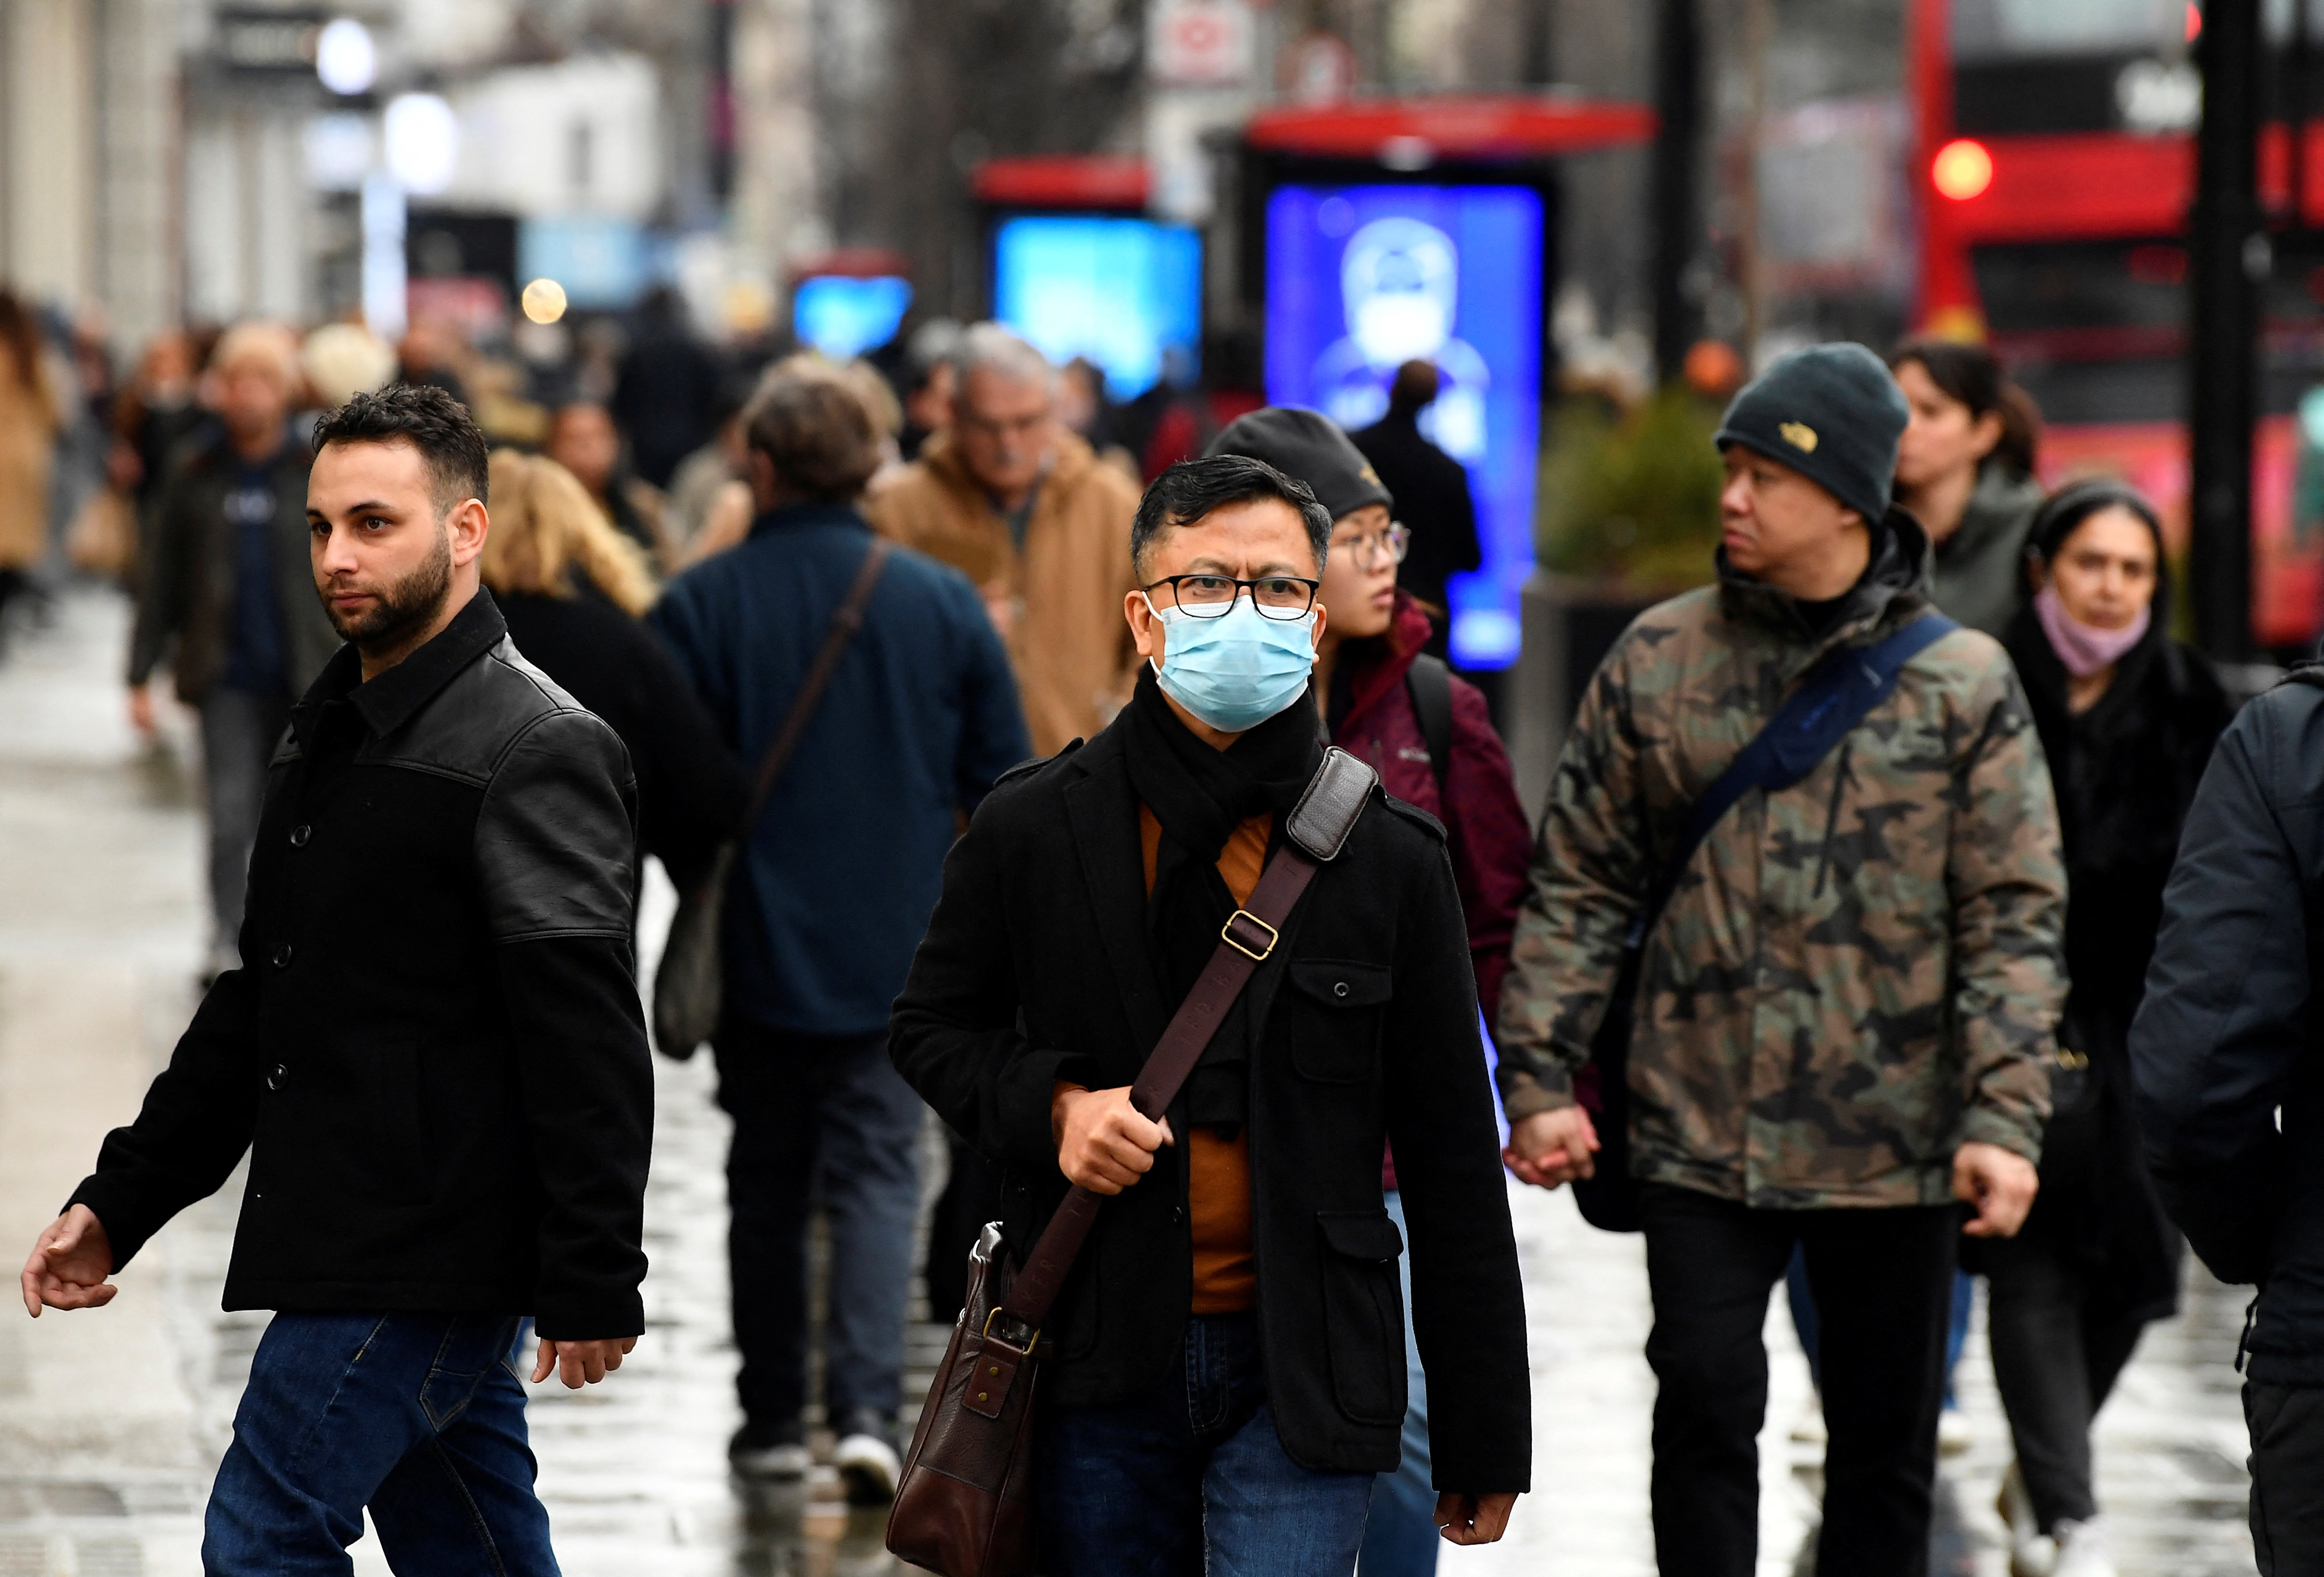 En Oxford Street, Londres, las personas pueden circular sin mascarilla desde enero de 2022 (REUTERS/Toby Melville)